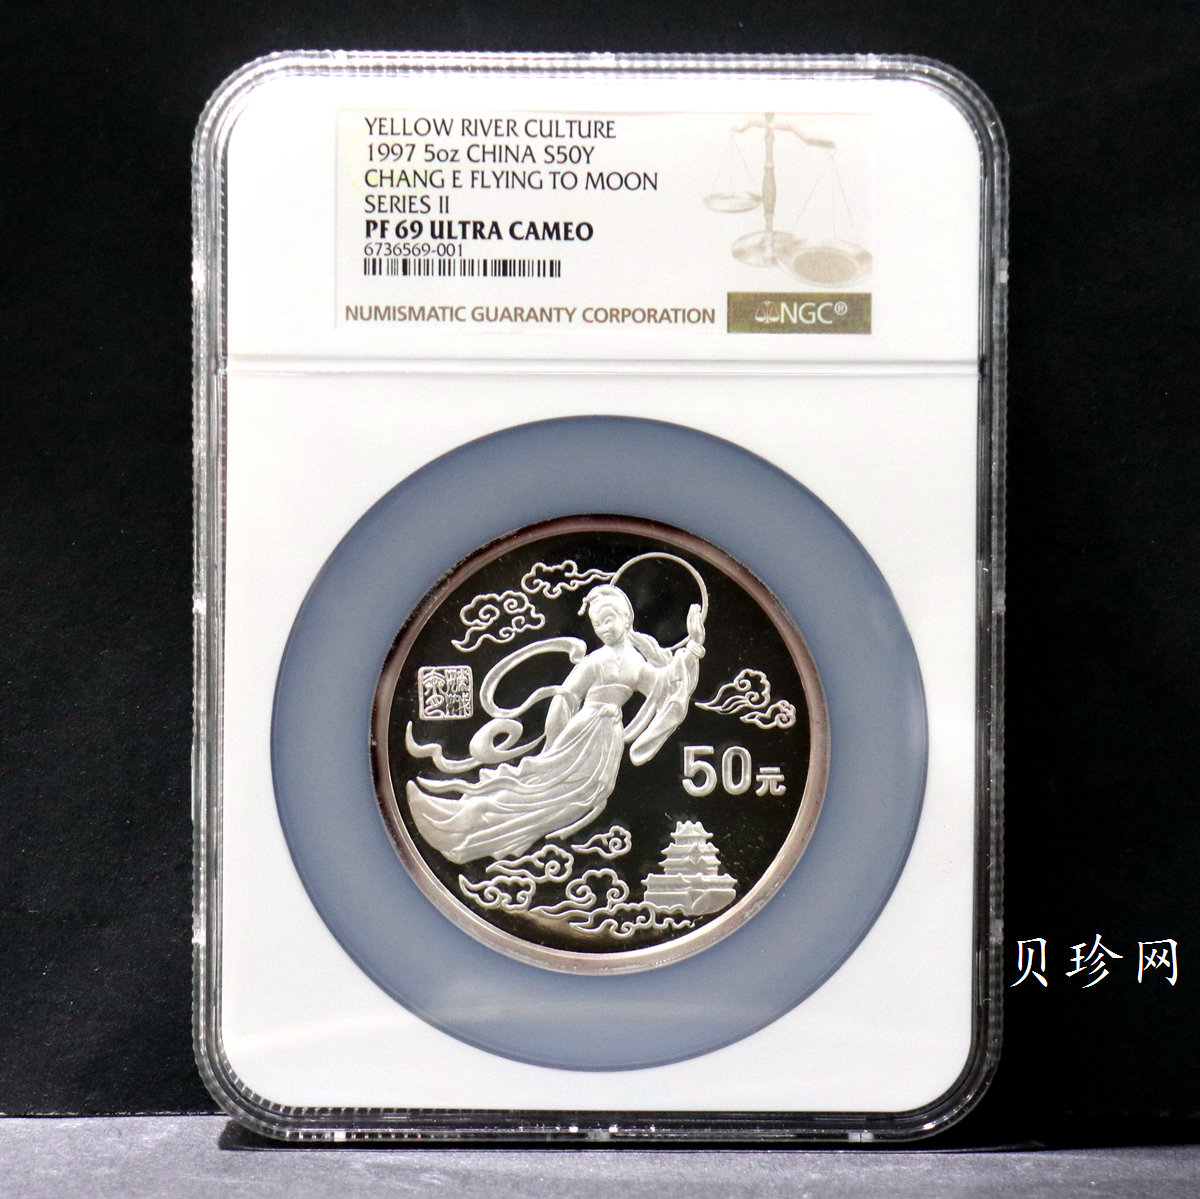 【971603】1997年黄河文化金银纪念币（第2组）-嫦娥奔月5盎司精制银币